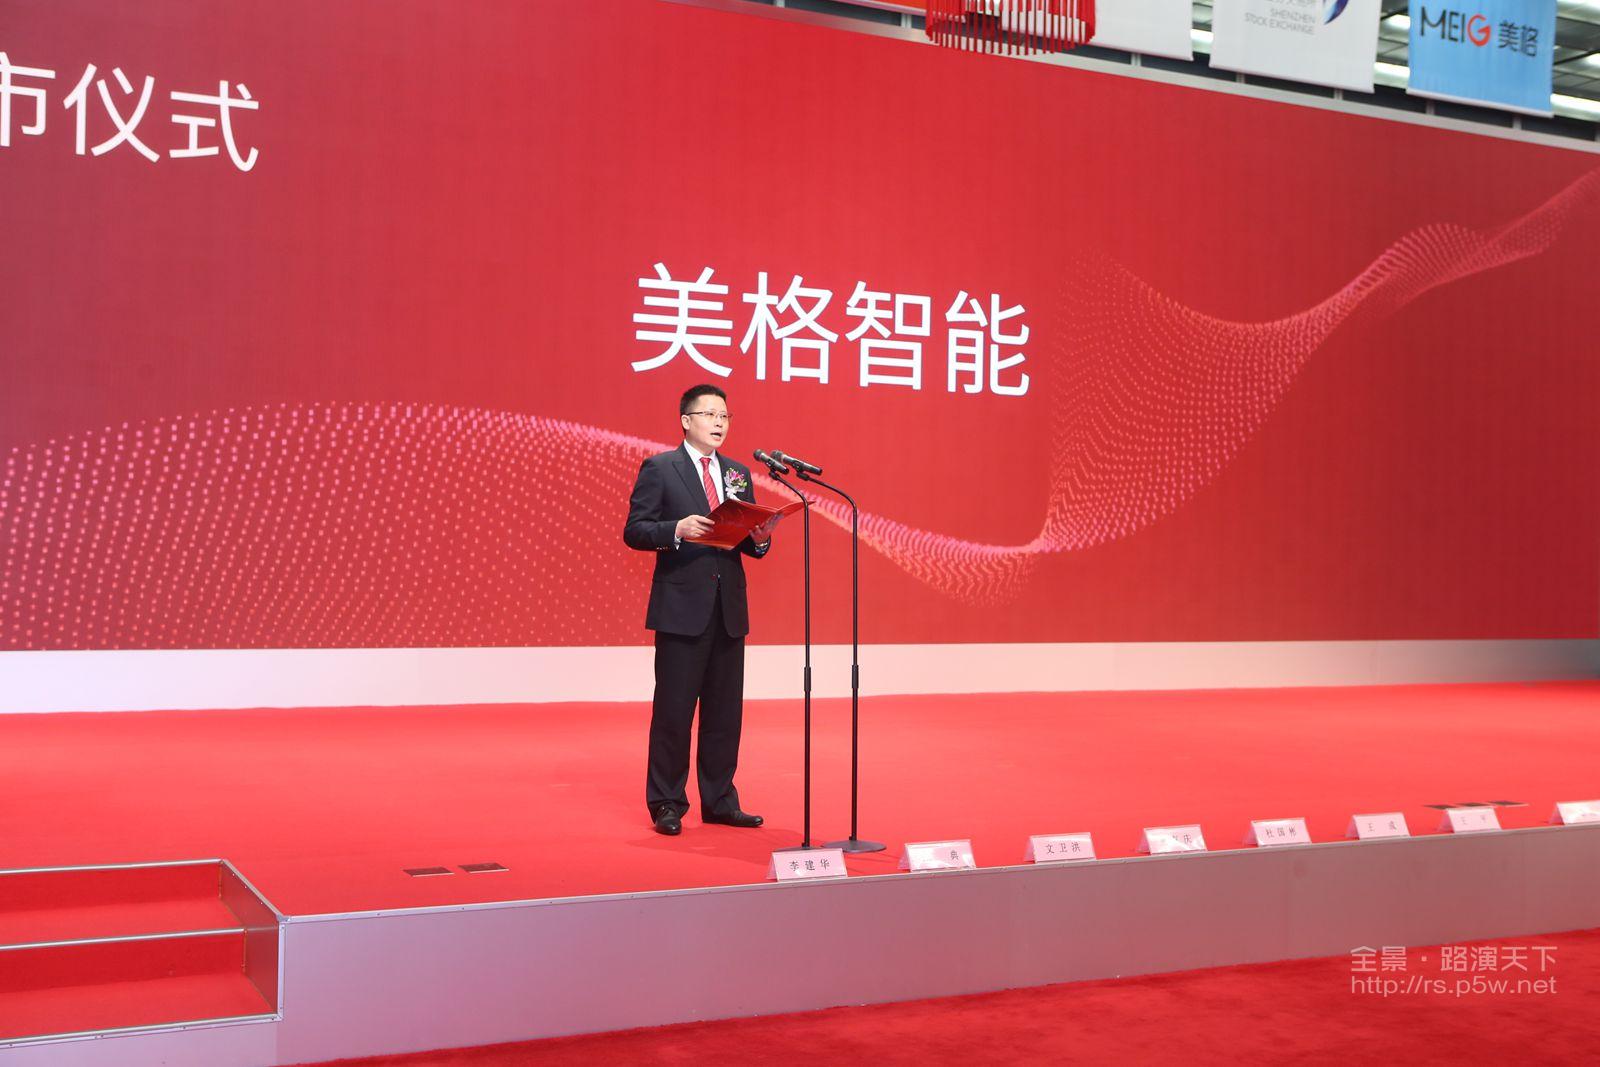 深圳市美格智能技术股份有限公司董事长,总经理王平先生致辞